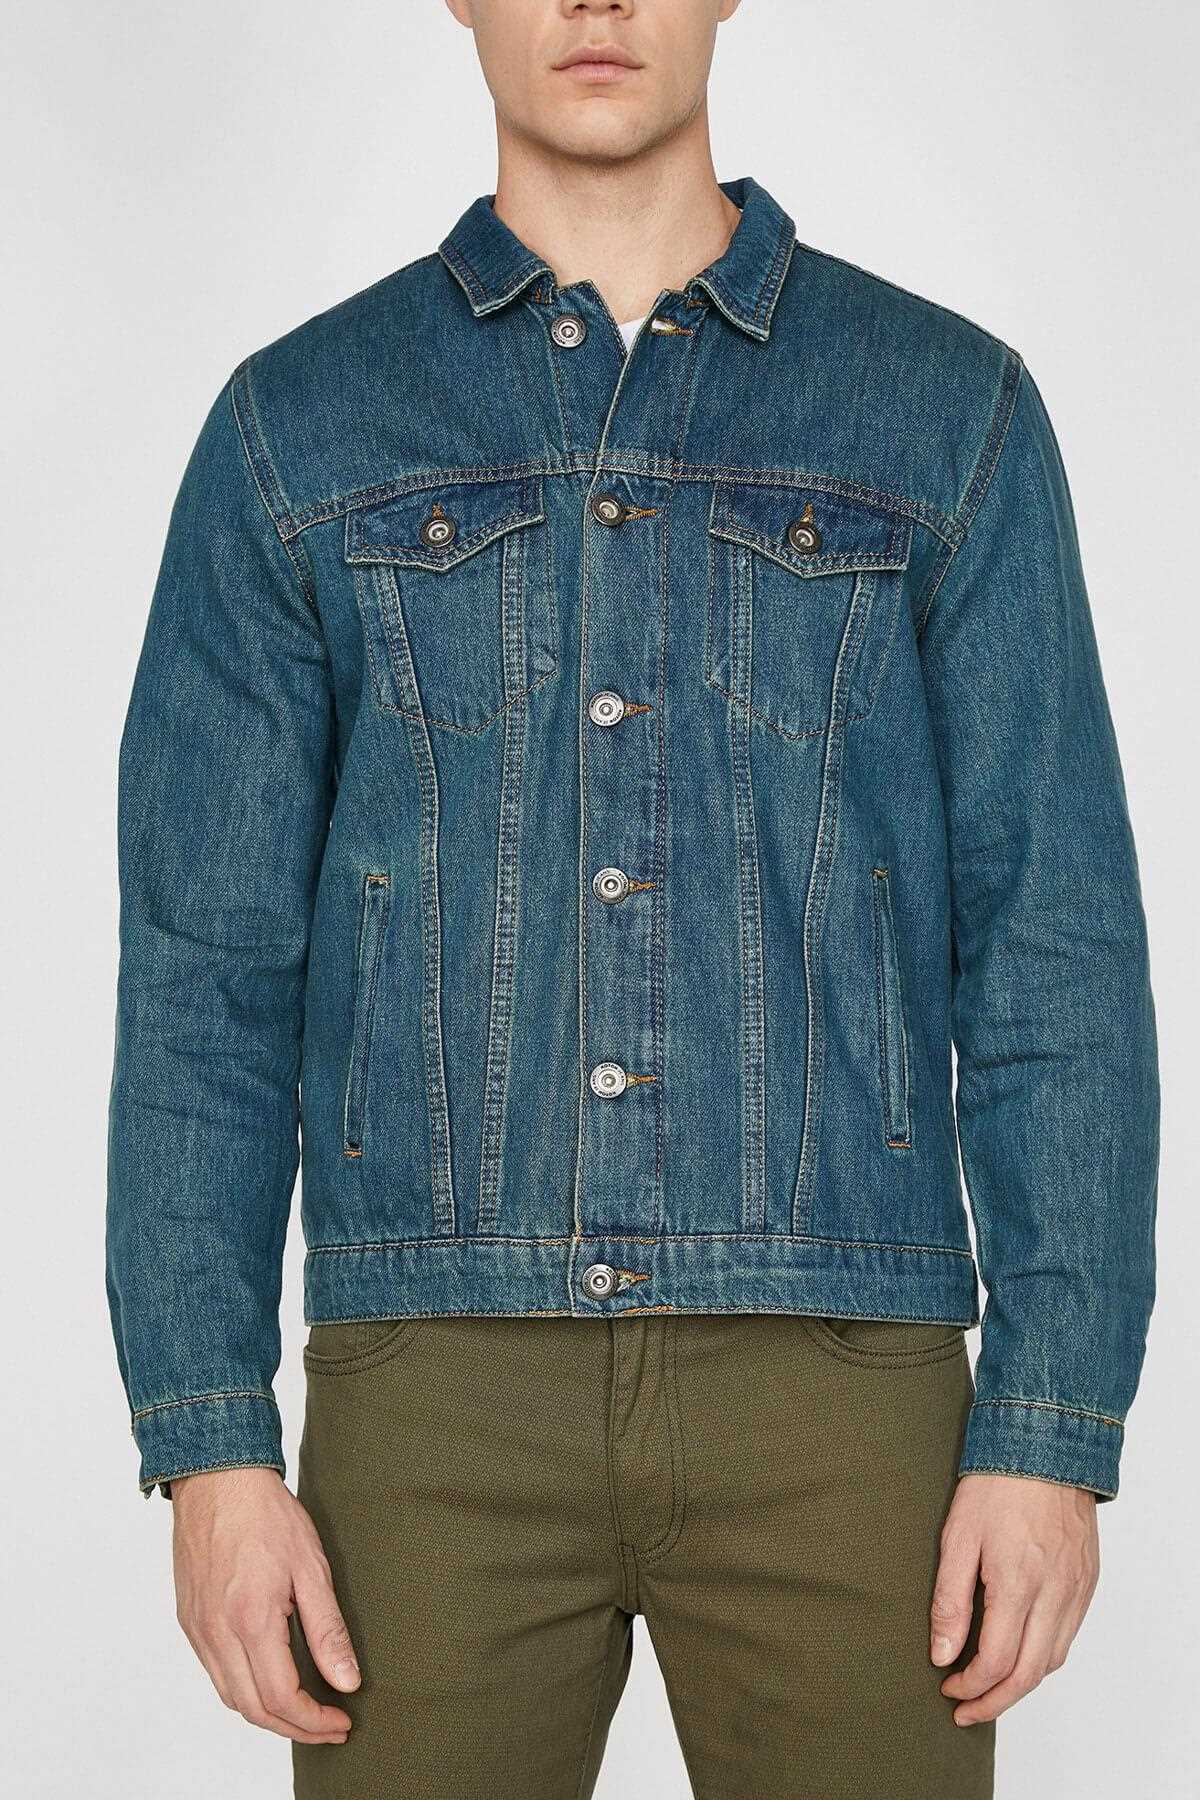 فروش انلاین ژاکت جین مردانه ارزان برند کوتون رنگ سبز کد ty4077411